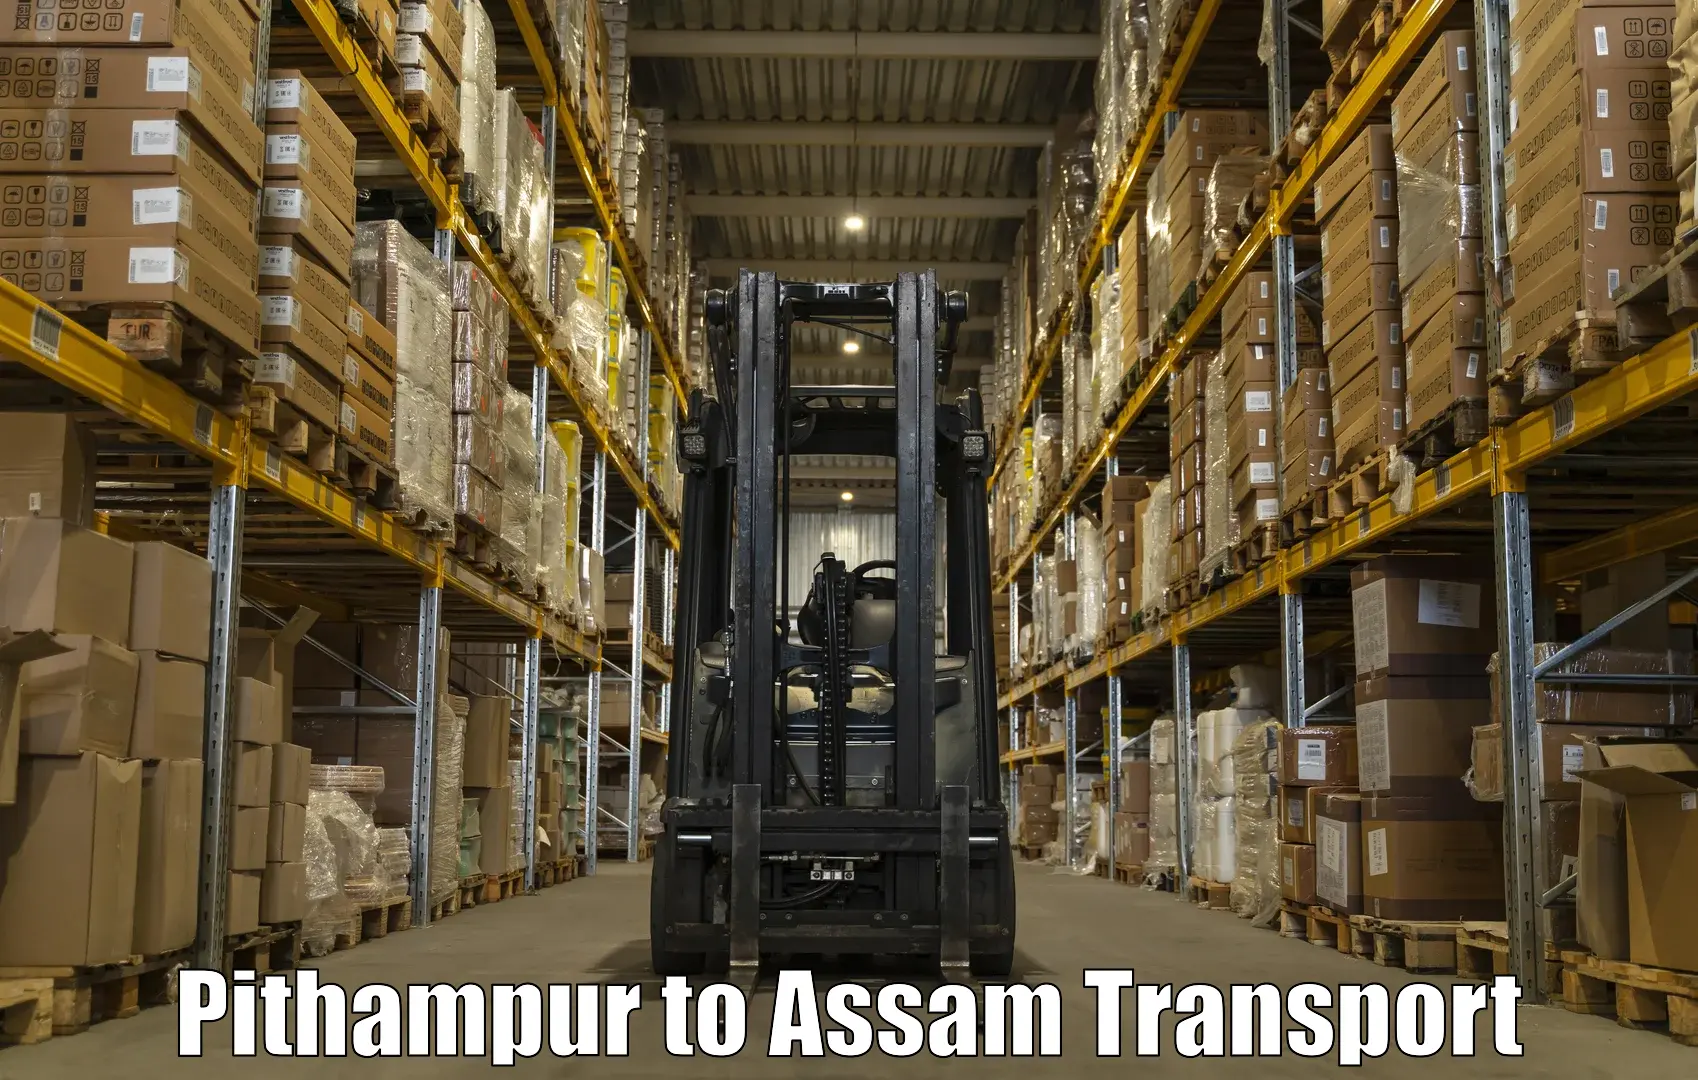 Furniture transport service Pithampur to Jorabat